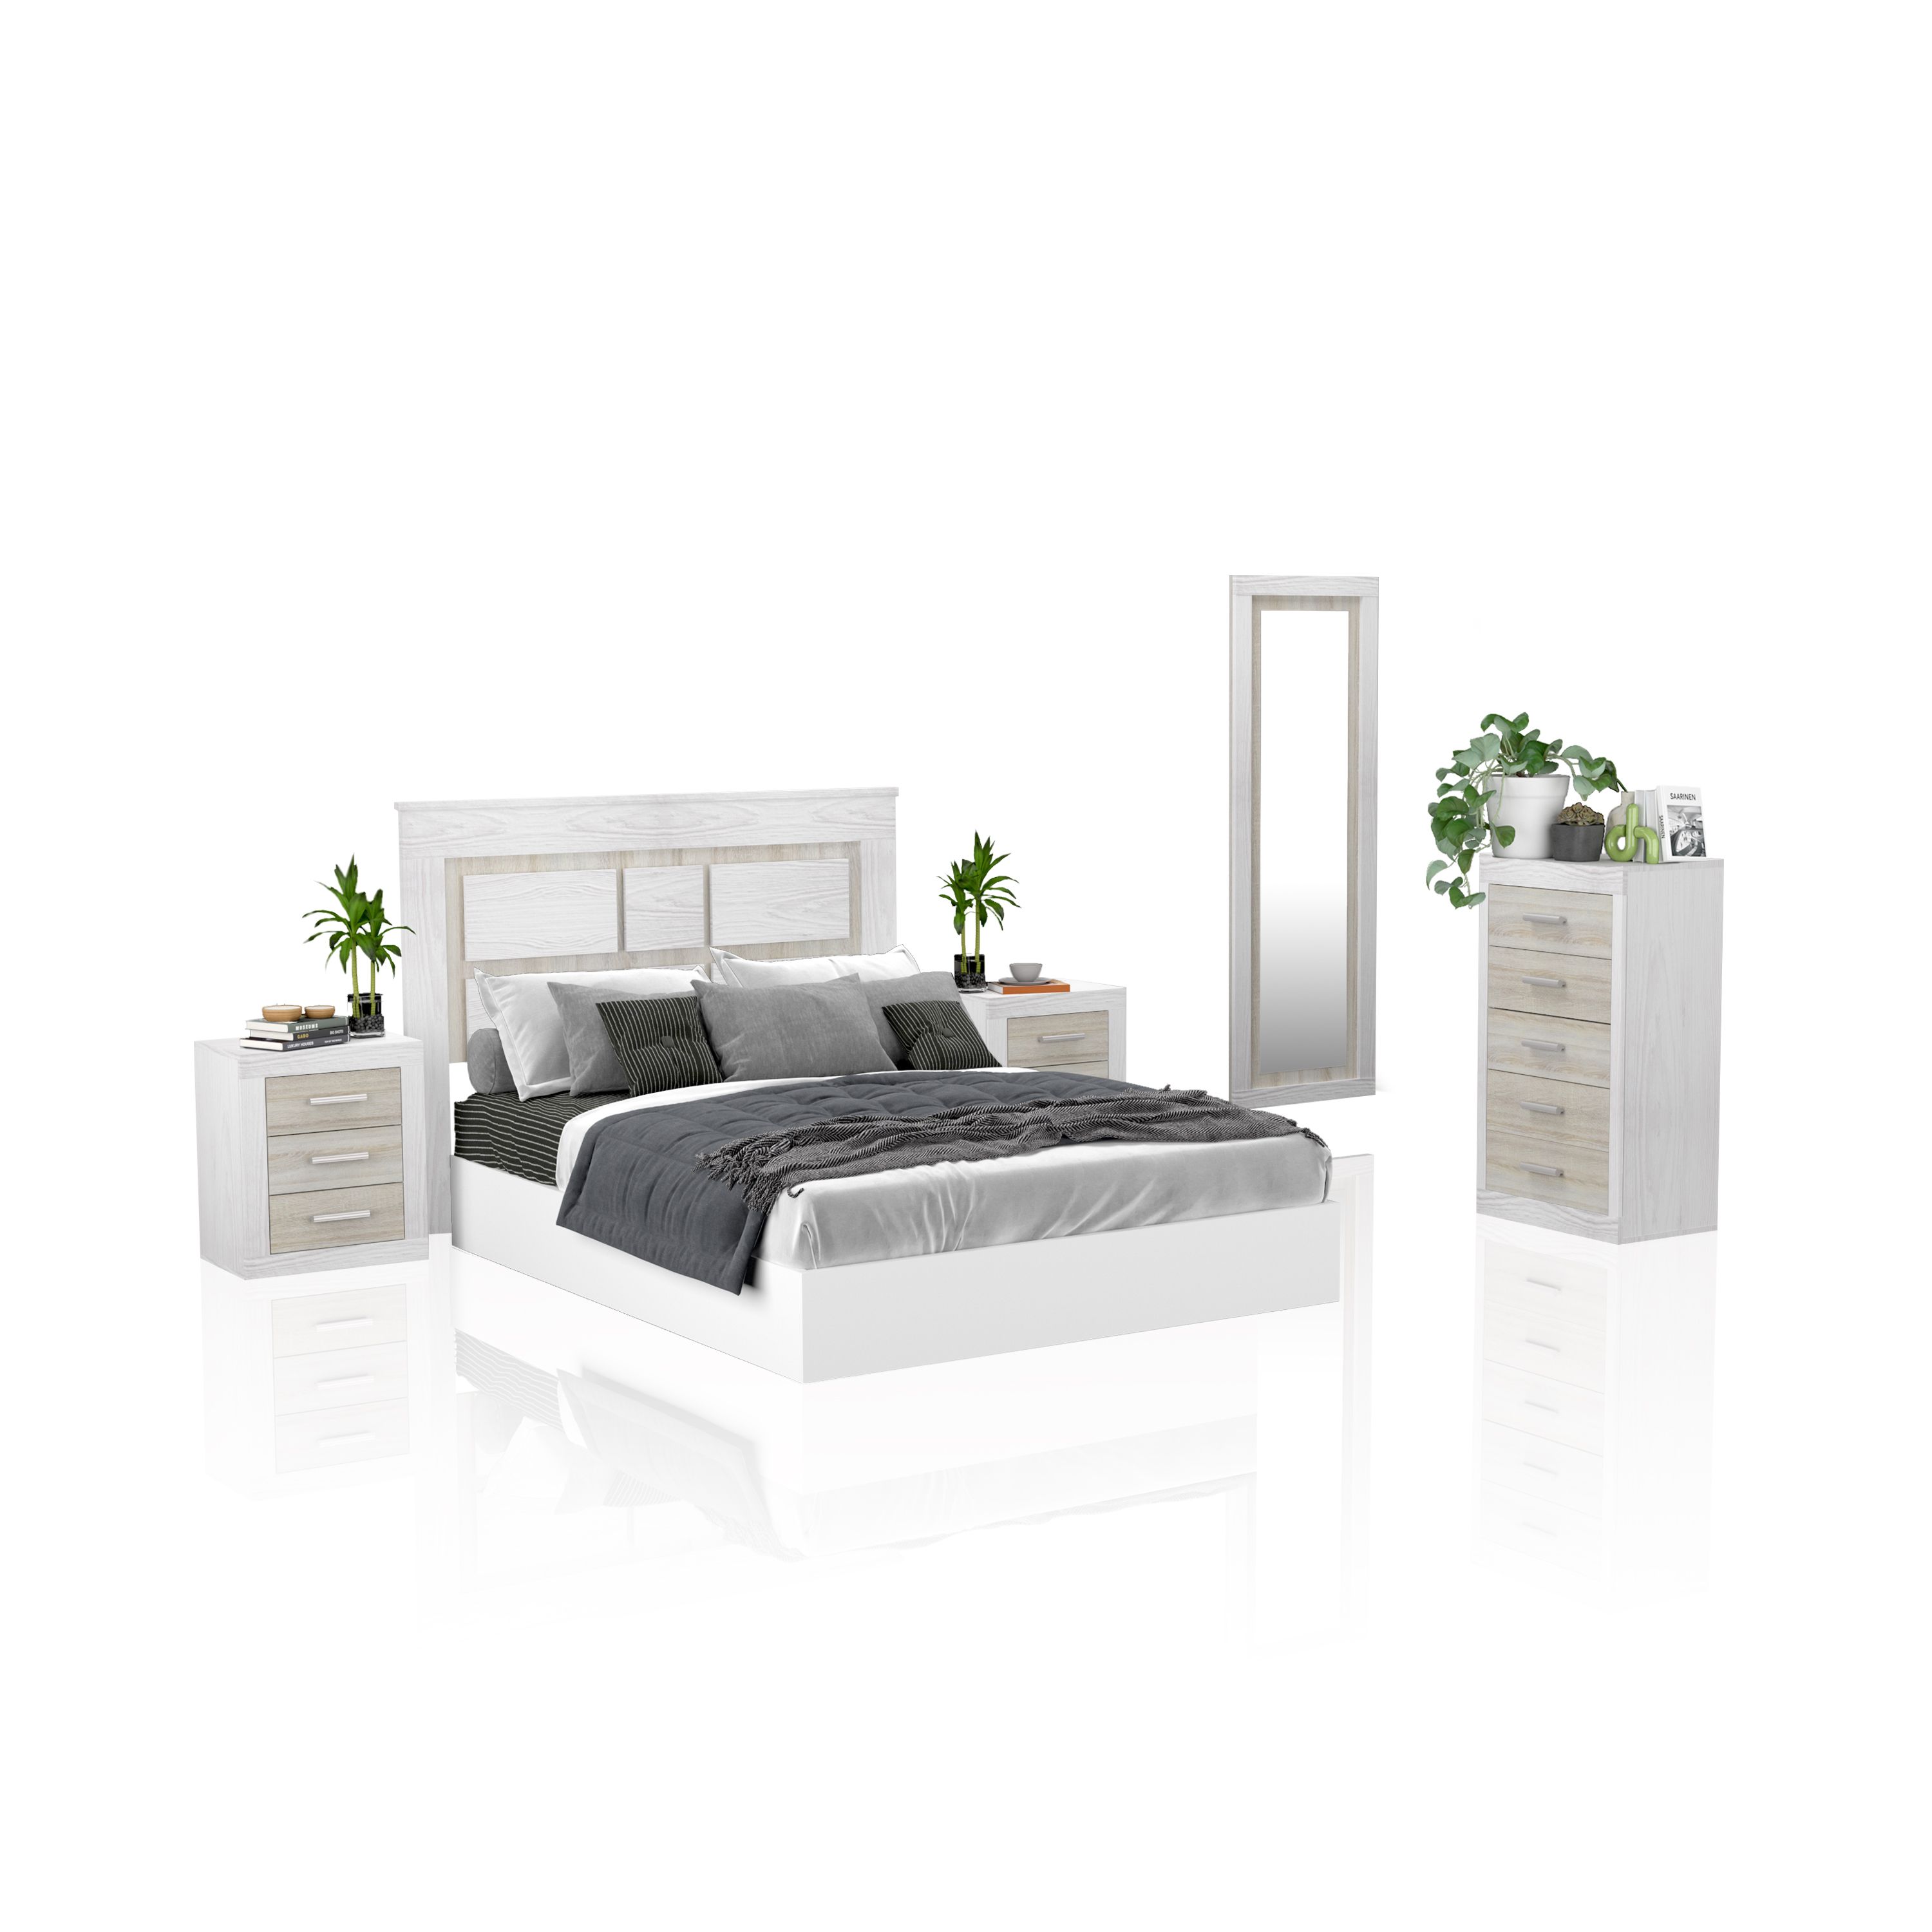 duehome - Duehome Conjunto Dormitorio Kira 5C | Diseño Elegante y Moderno